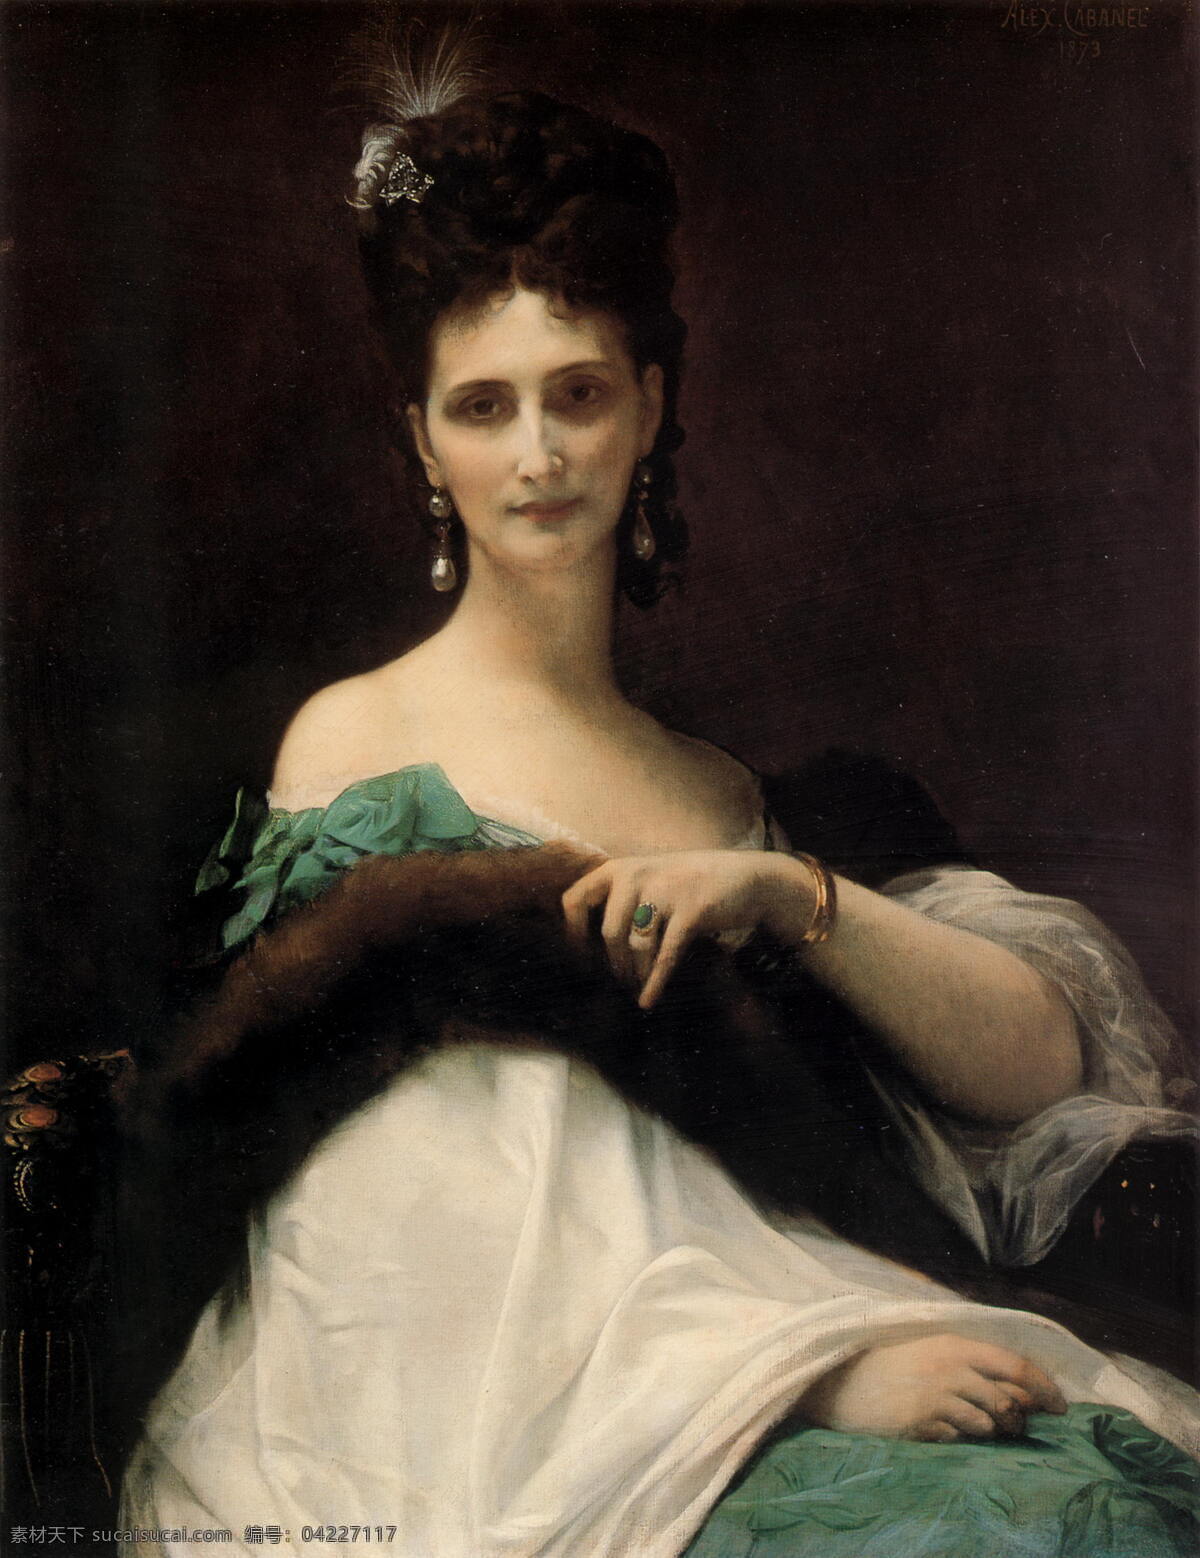 贵妇人 贵妇 人物肖像 写实 油画作品 西方美术 半身像 装饰素材